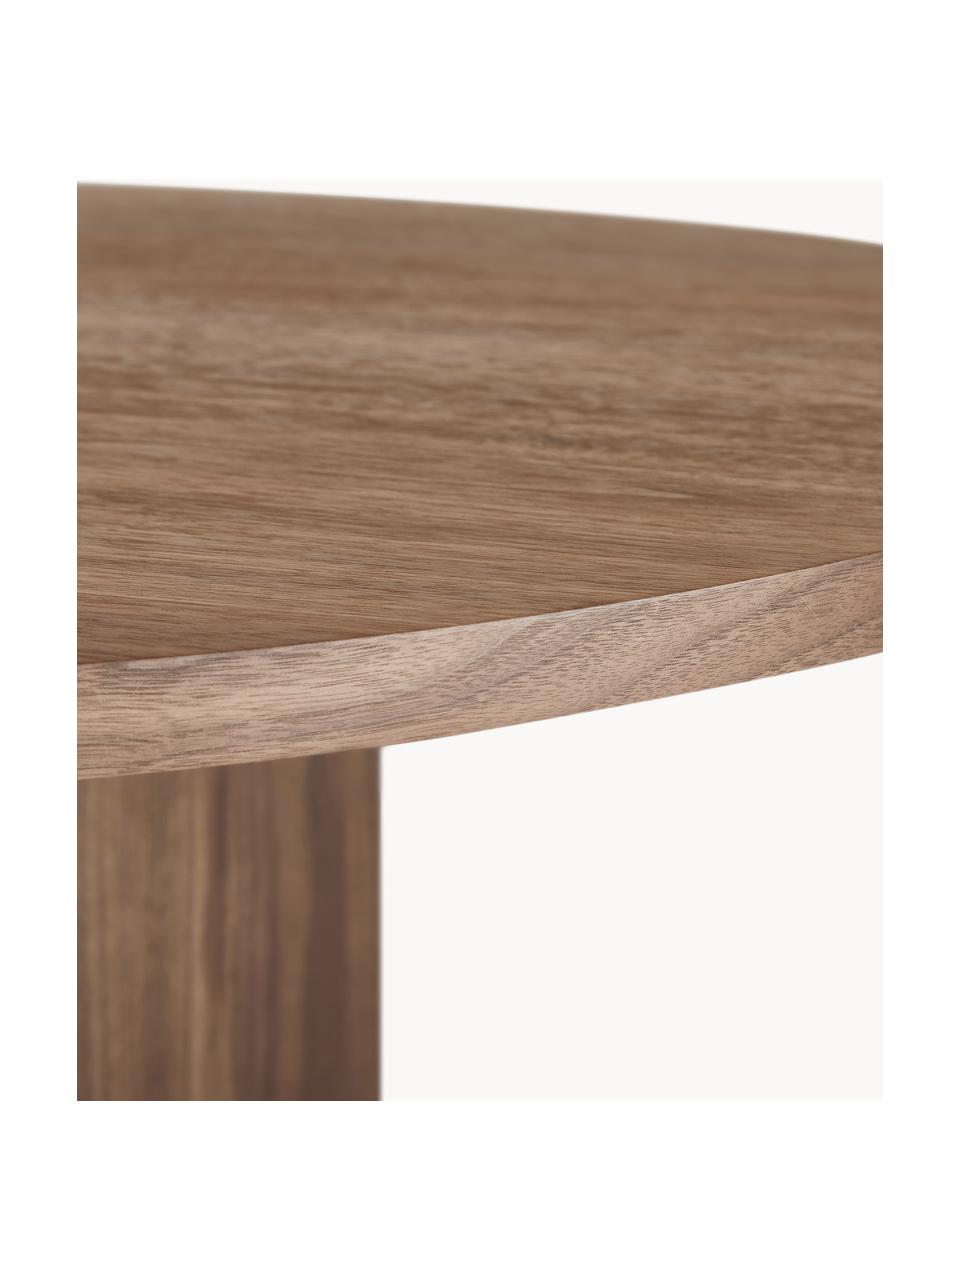 Oválny jedálenský stôl z dreva Toni, 200 x 90 cm, MDF-doska strednej hustoty s orechovou dyhou, lakovaná, Orechové drevo, Š 200 x V 90 cm